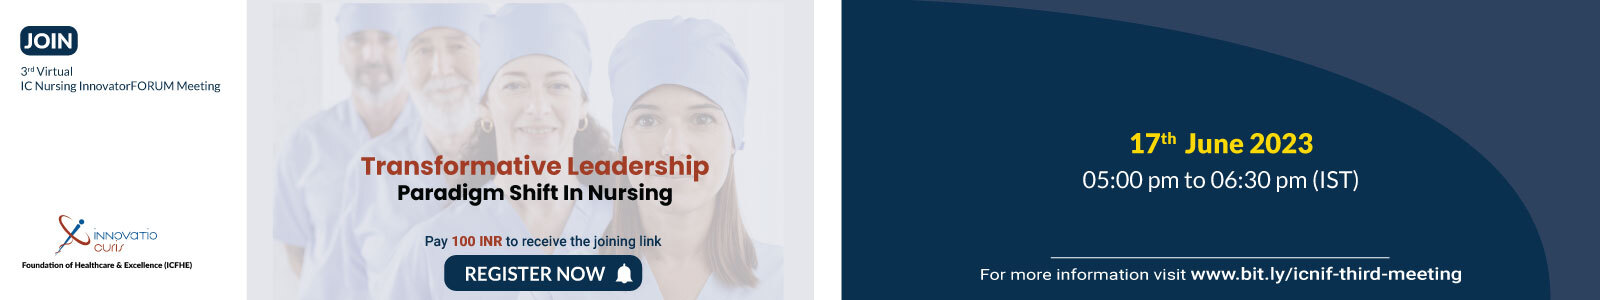 IC-Nursing-3rd-virtual-meeting-banner-final